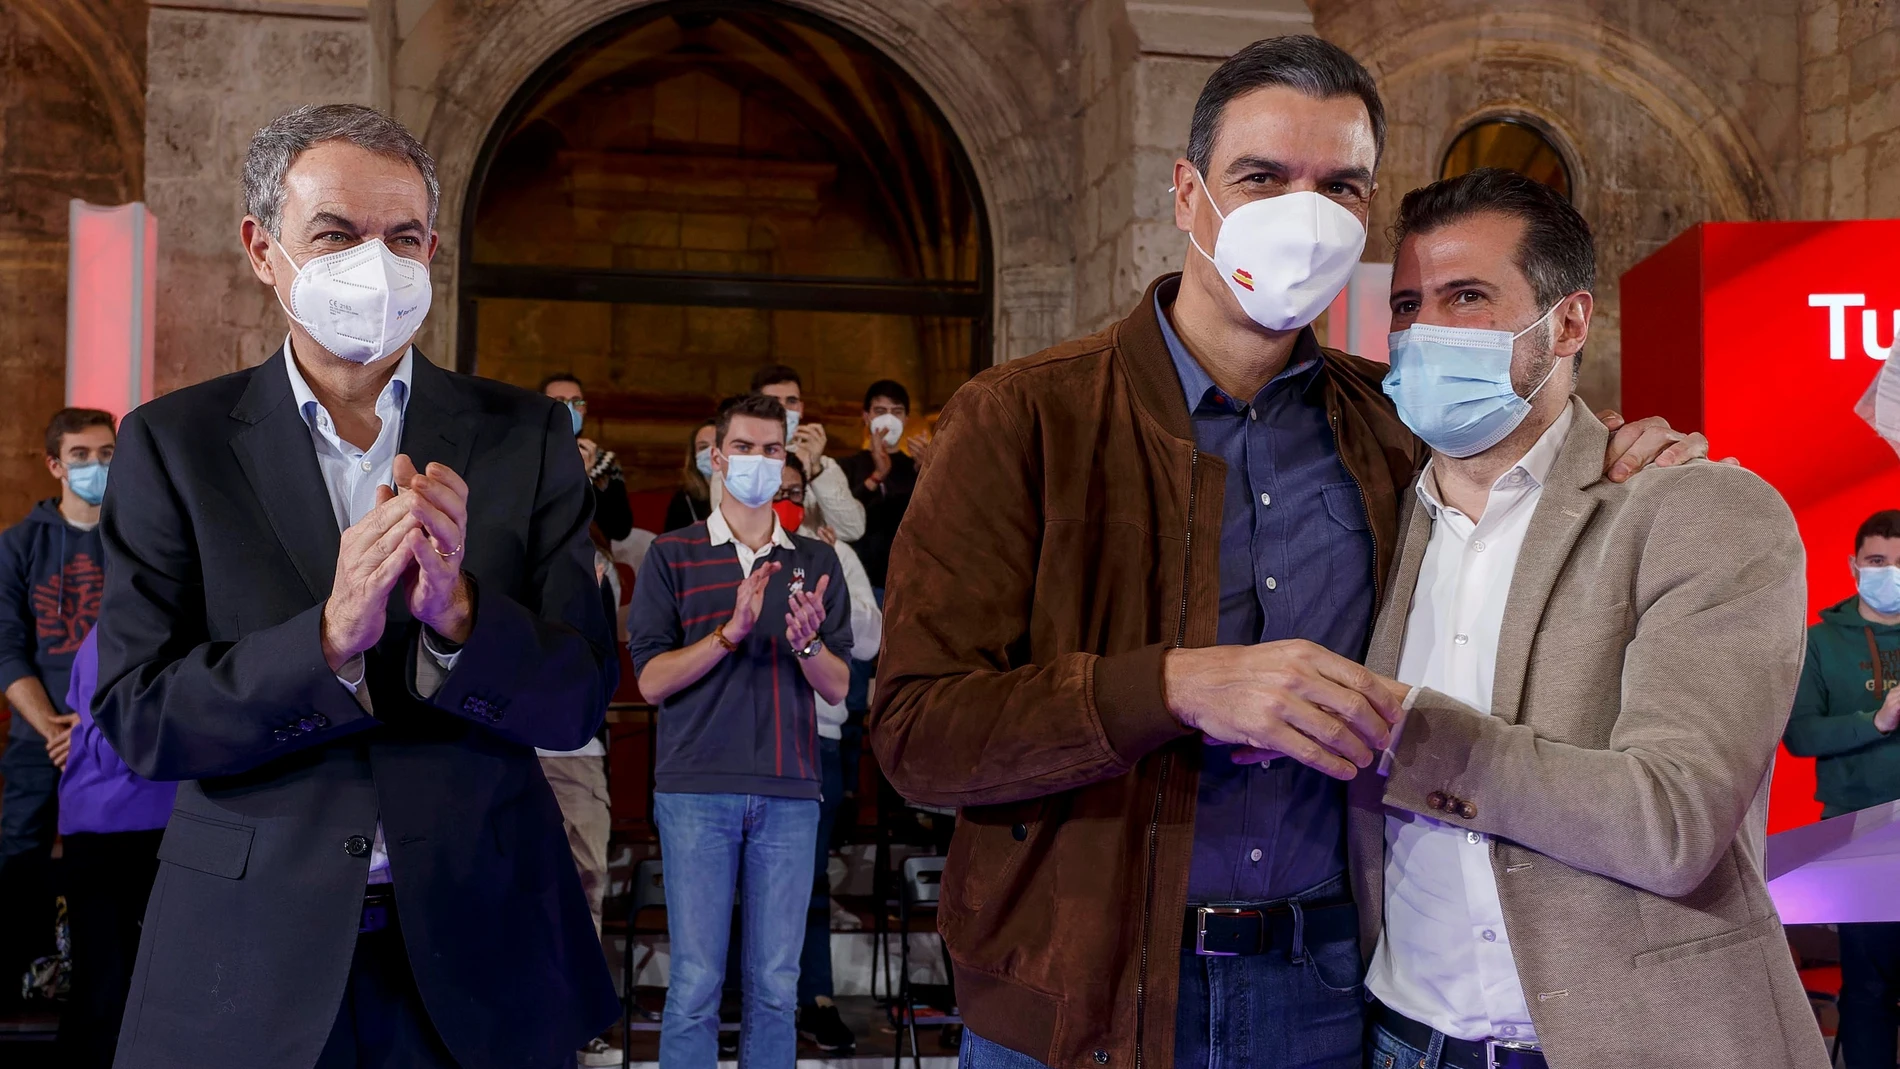 El presidente del Gobierno, Pedro Sánchez, arropa al candidato socialista Luis Tudanca junto al expresidente José Luis Rodríguez Zapatero.